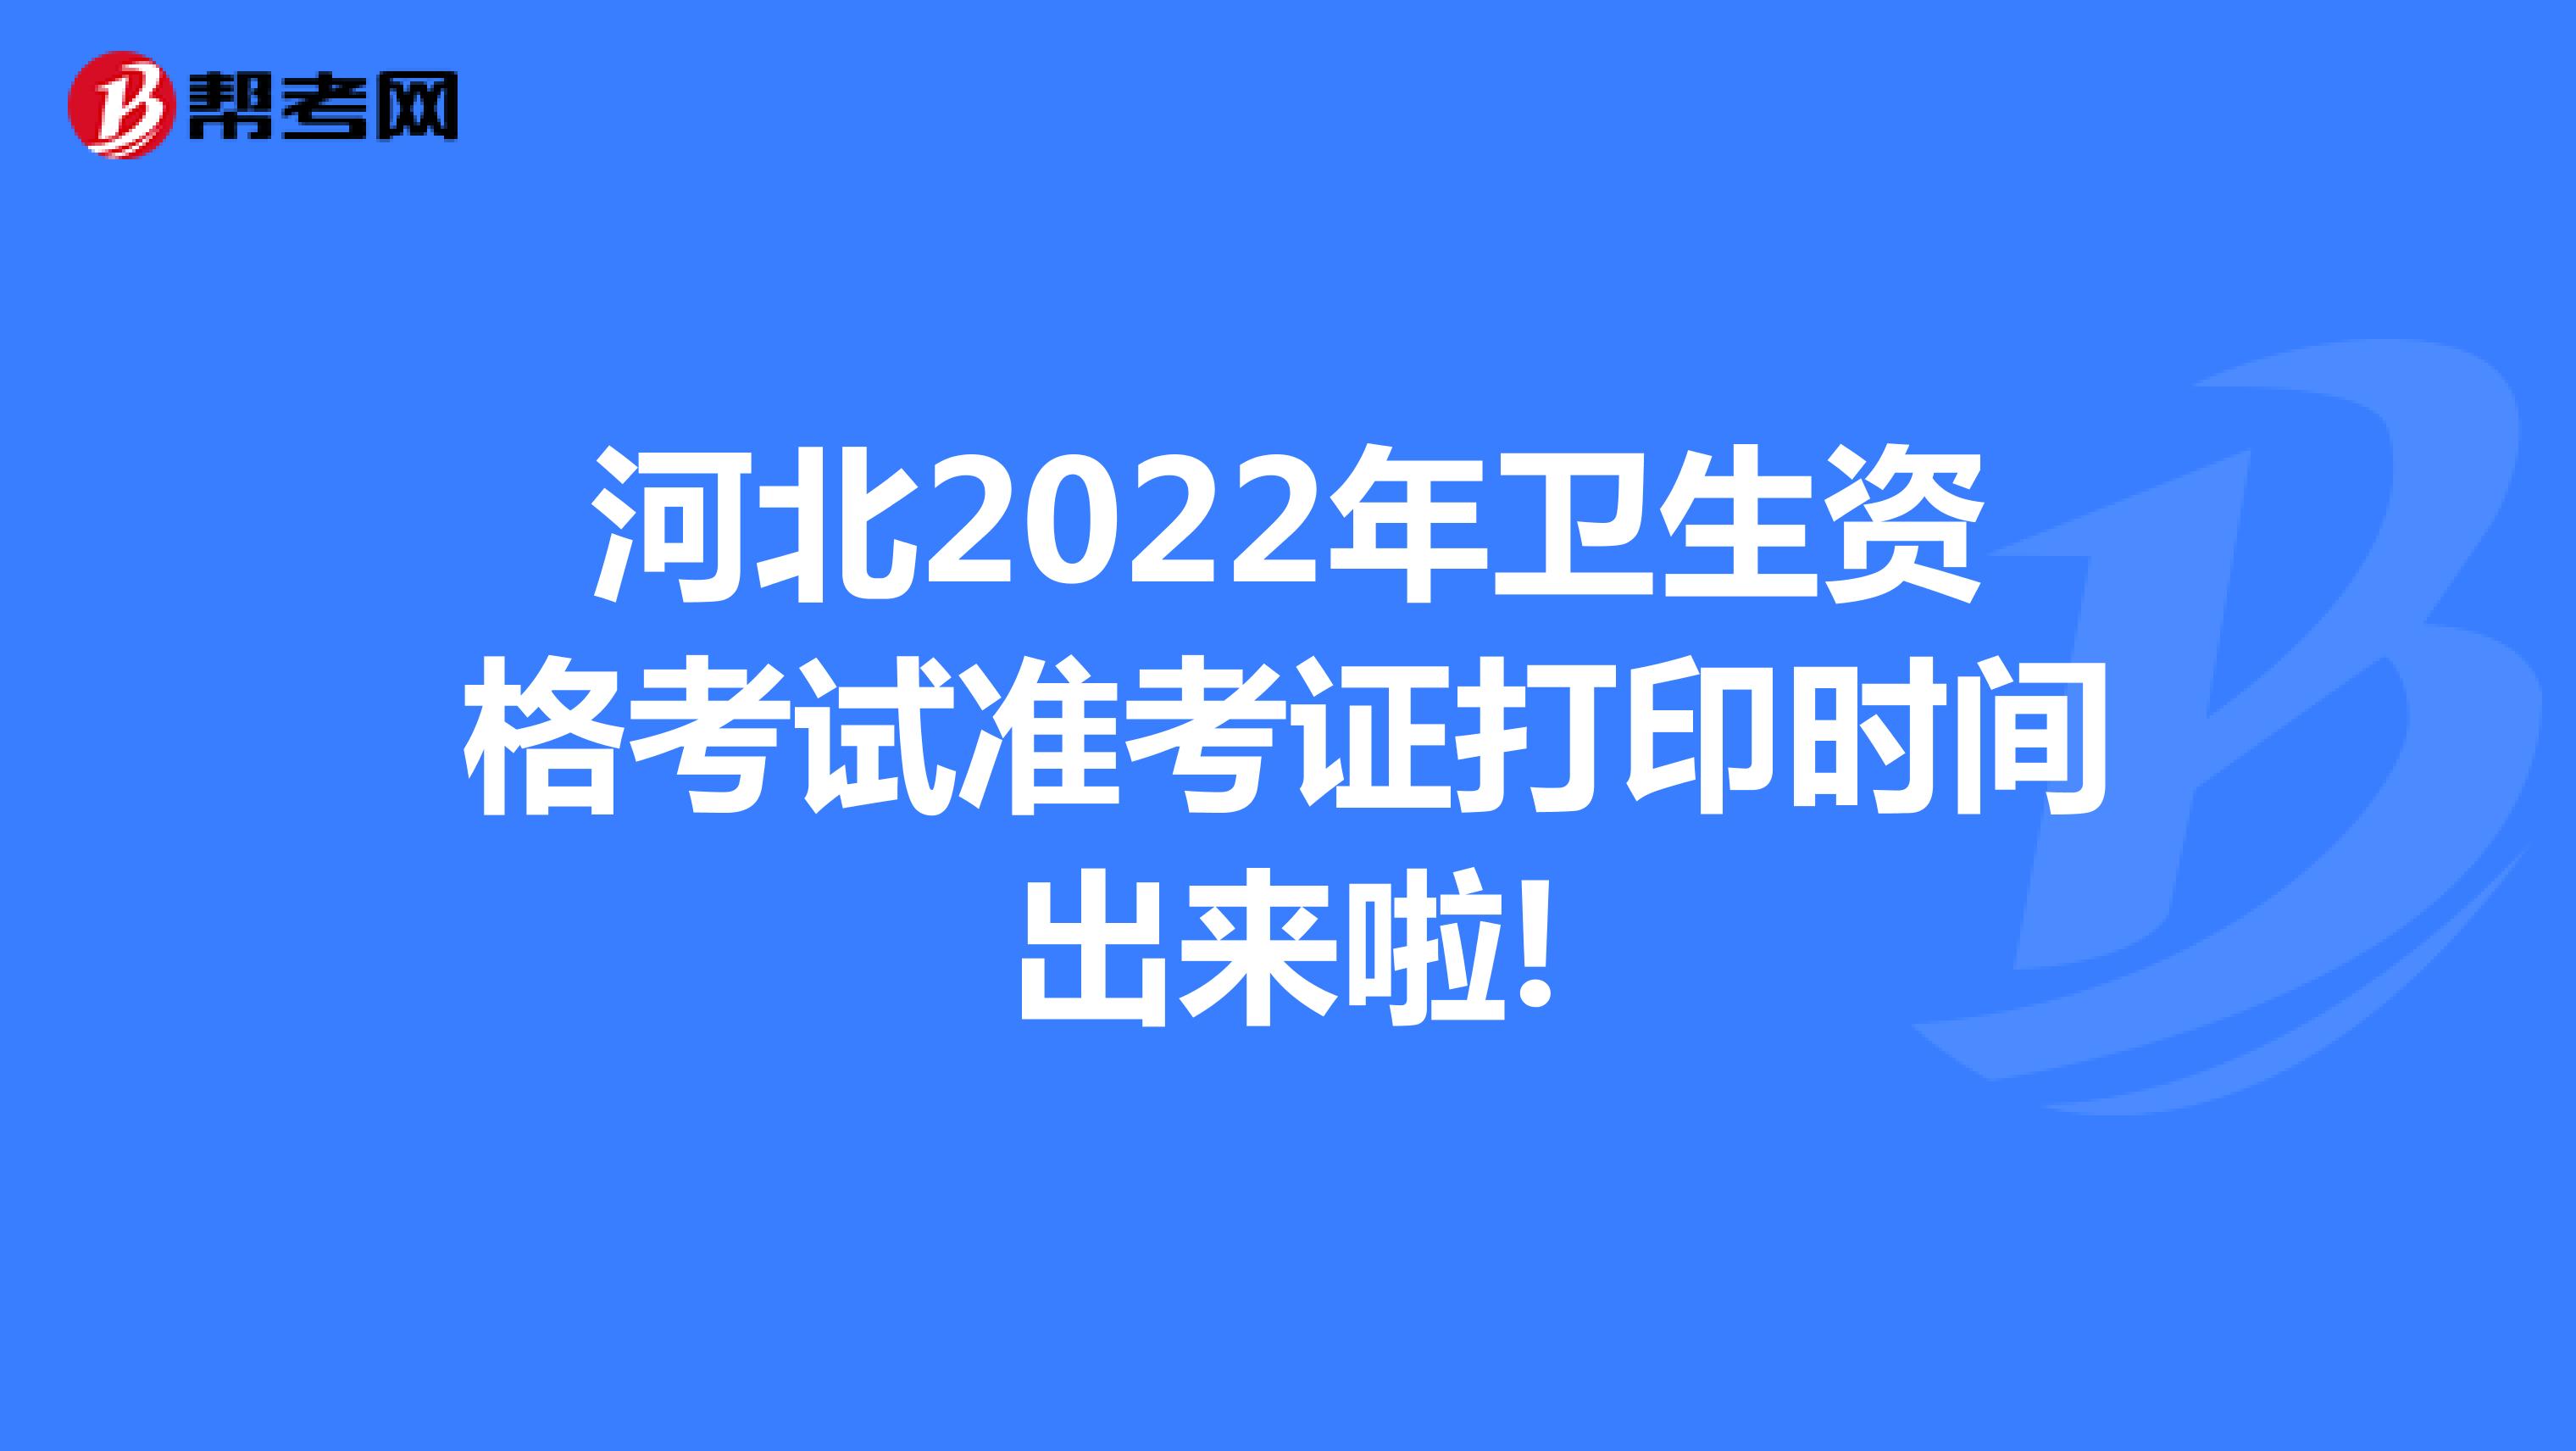 河北2022年卫生资格考试准考证打印时间出来啦!